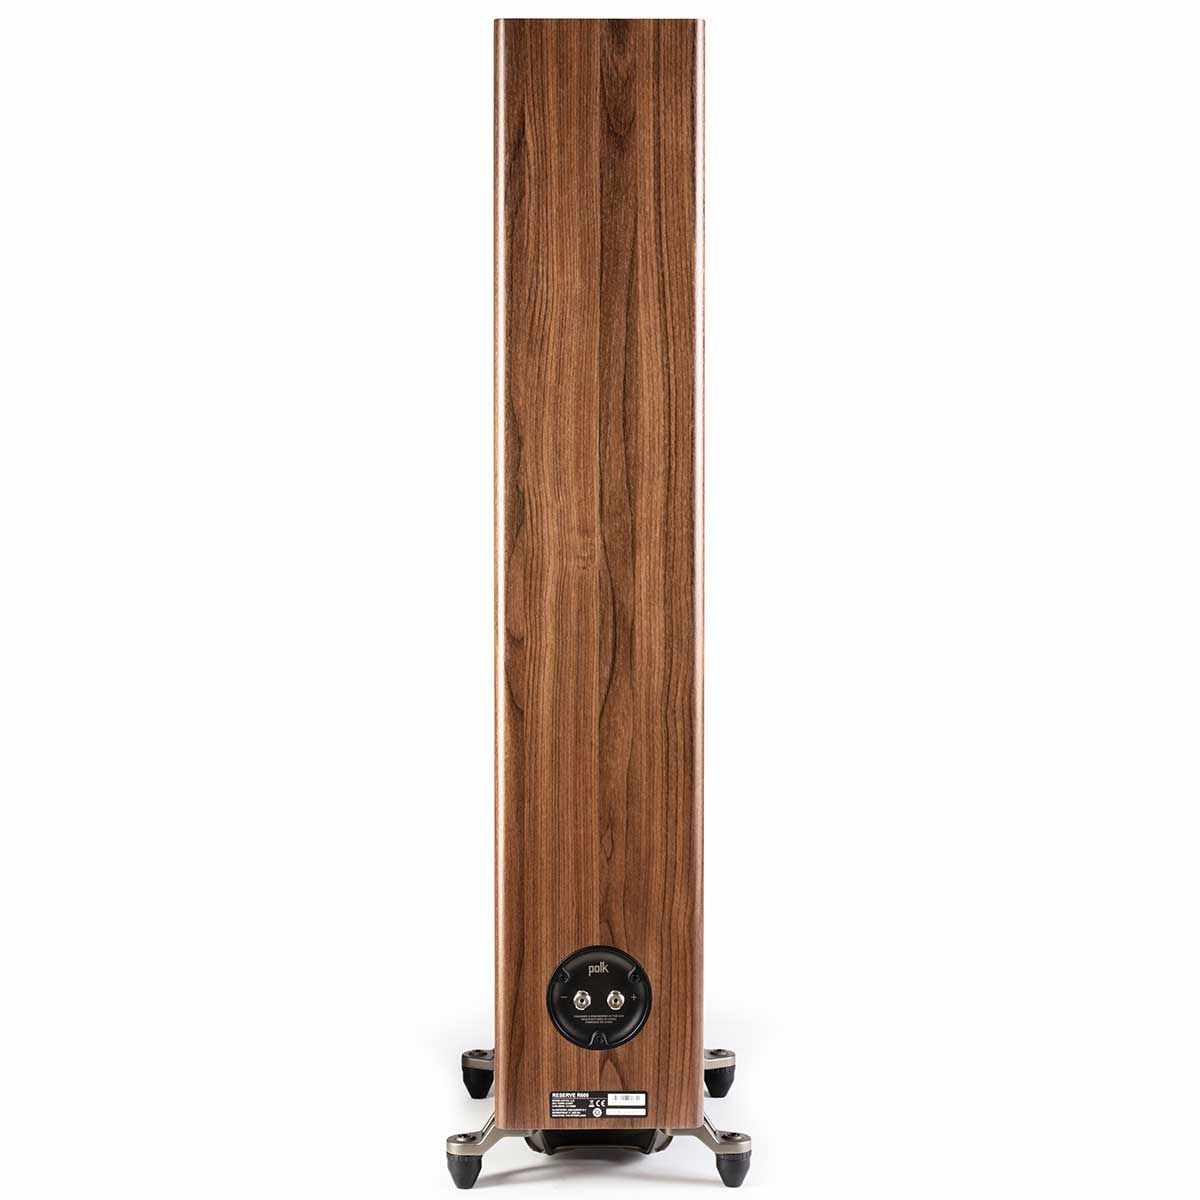 Polk R600 Floorstanding Speaker, Walnut, back